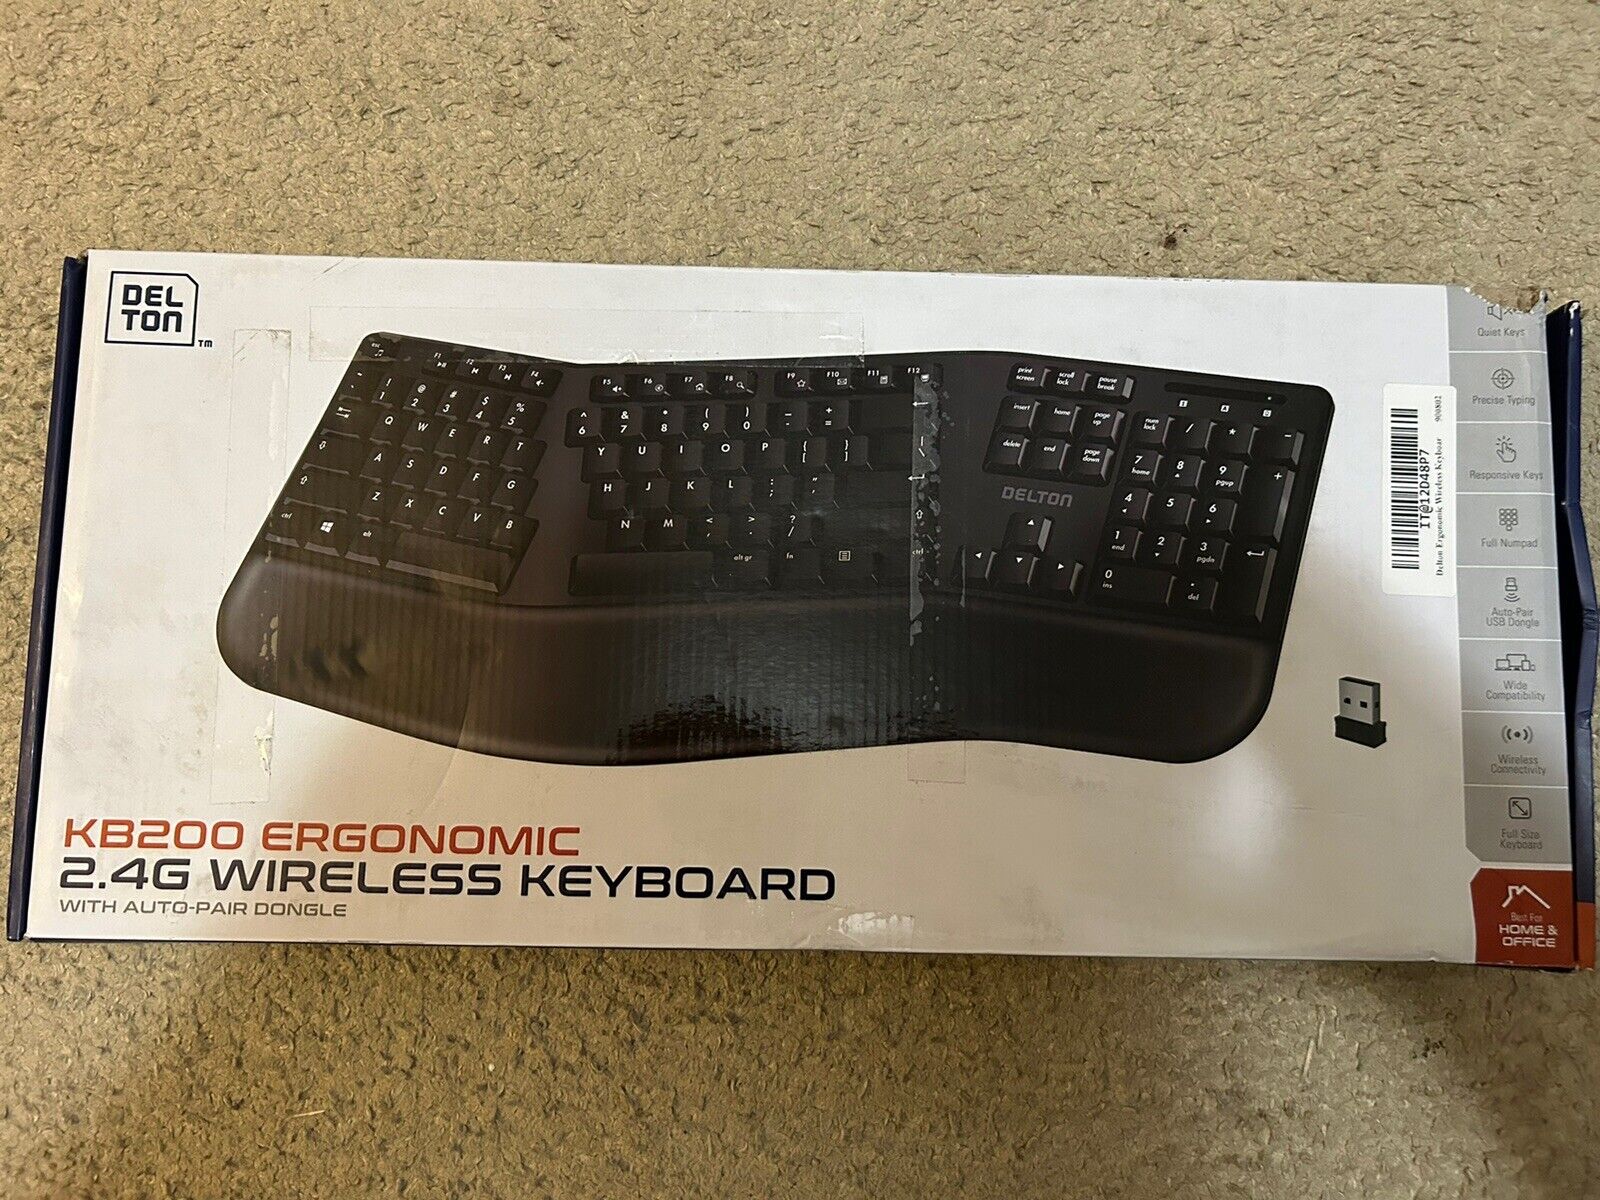 Delton KB200 Ergonomic 2.4G Wireless Keyboard - Black